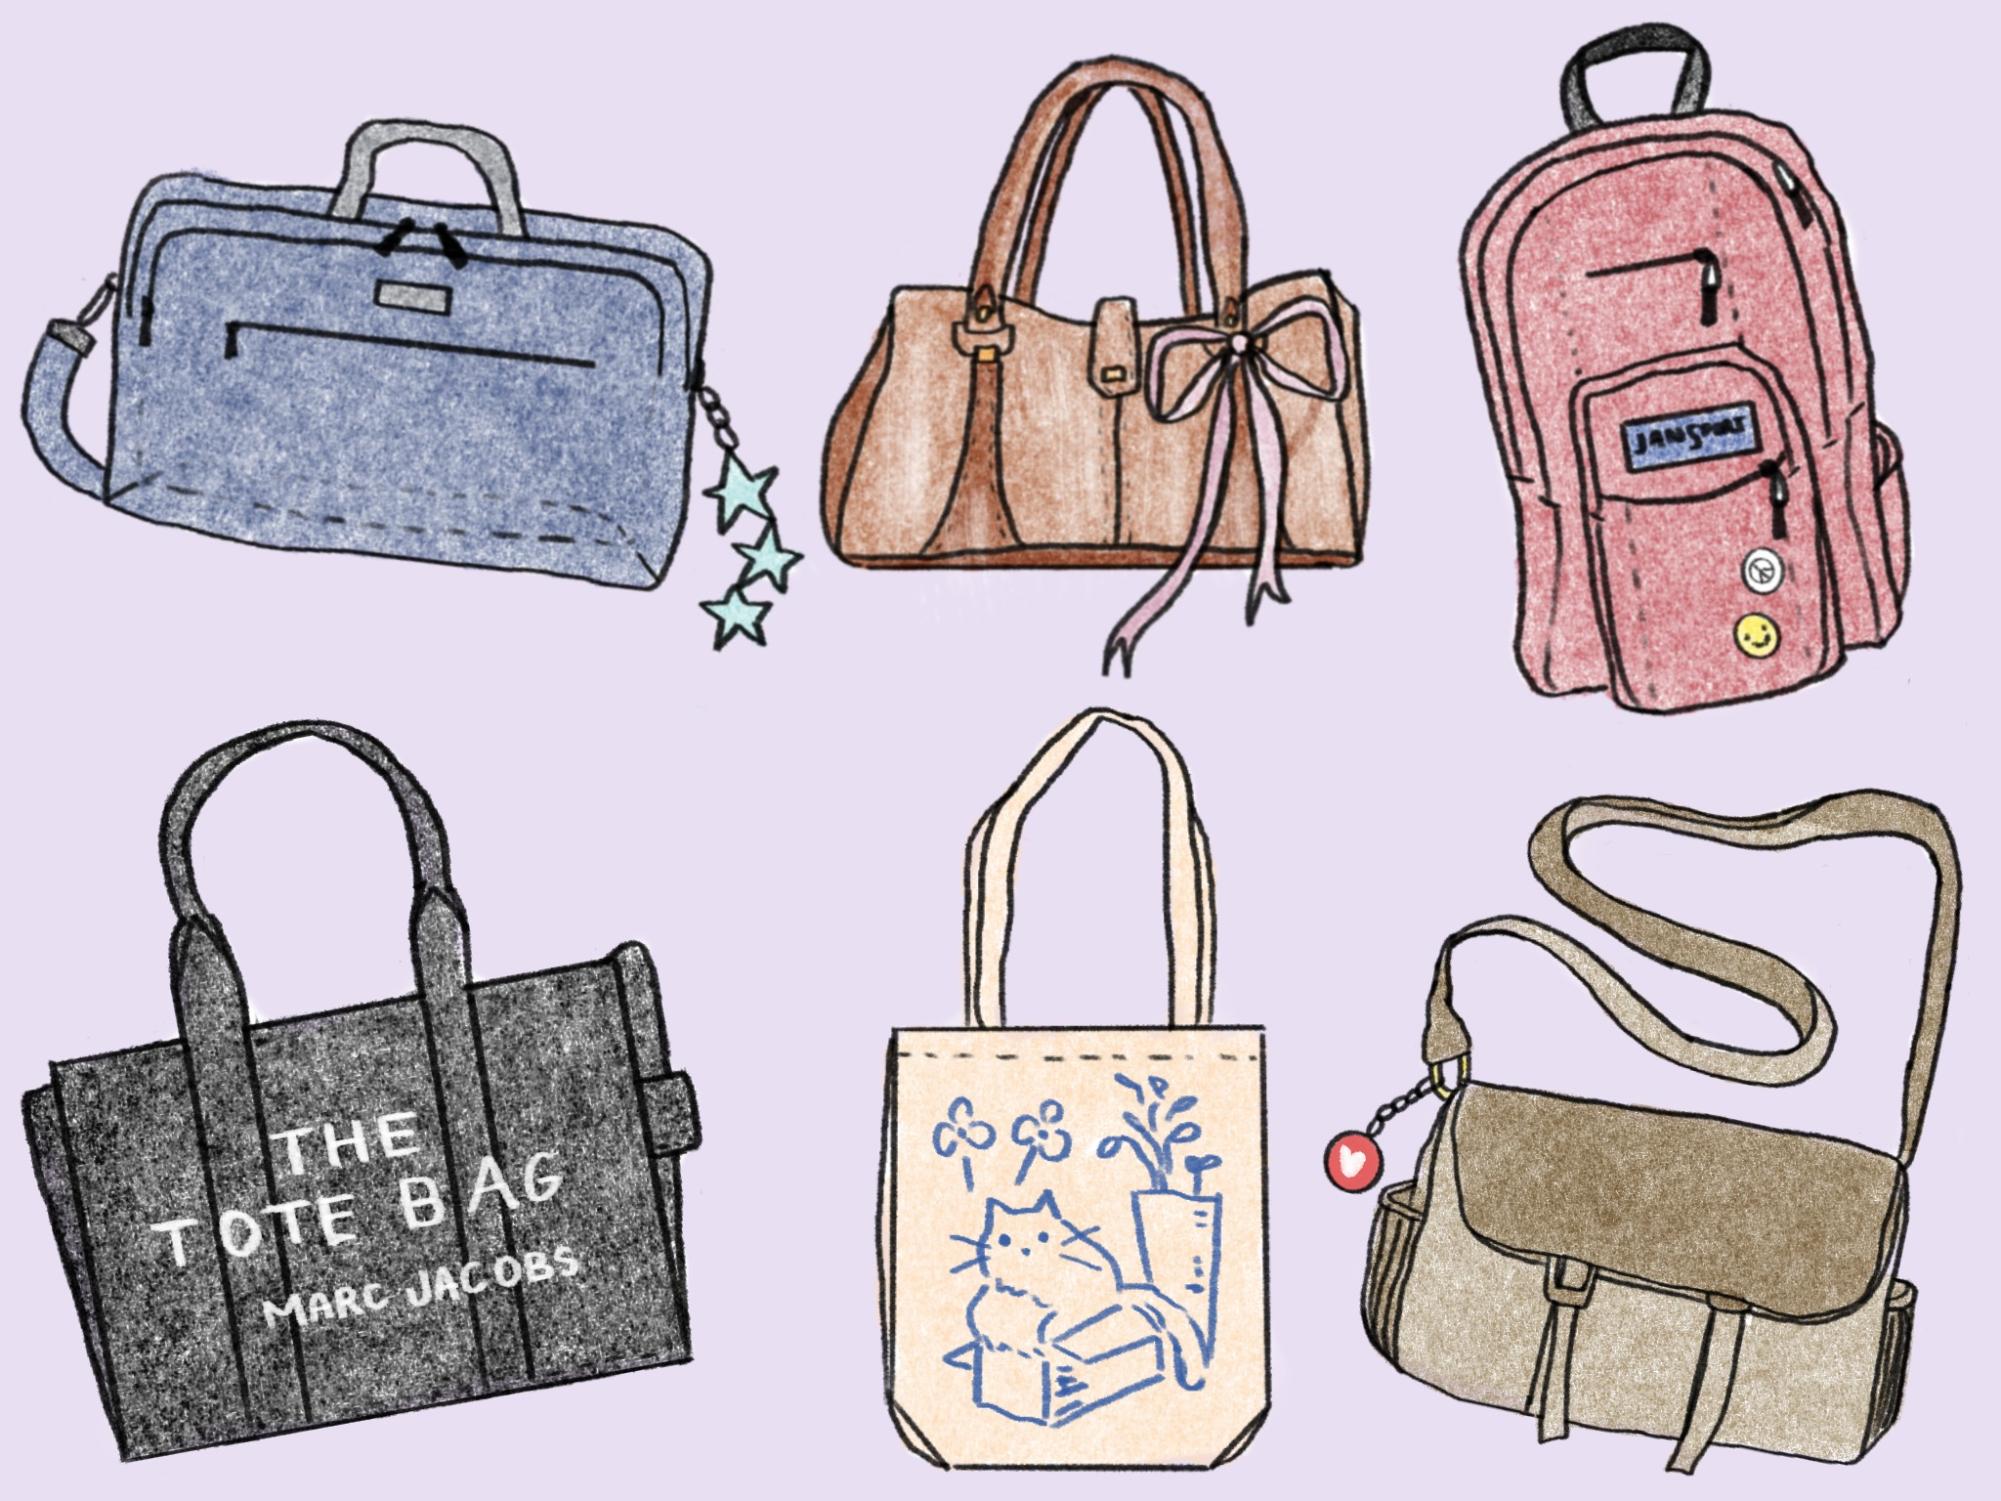 A colorful illustration of six different handbags: a blue laptop bag, a brown designer bag, a pink Jansport backpack, a black designer tote bag, a cream fabric tote bag, and a brown vintage messenger bag.